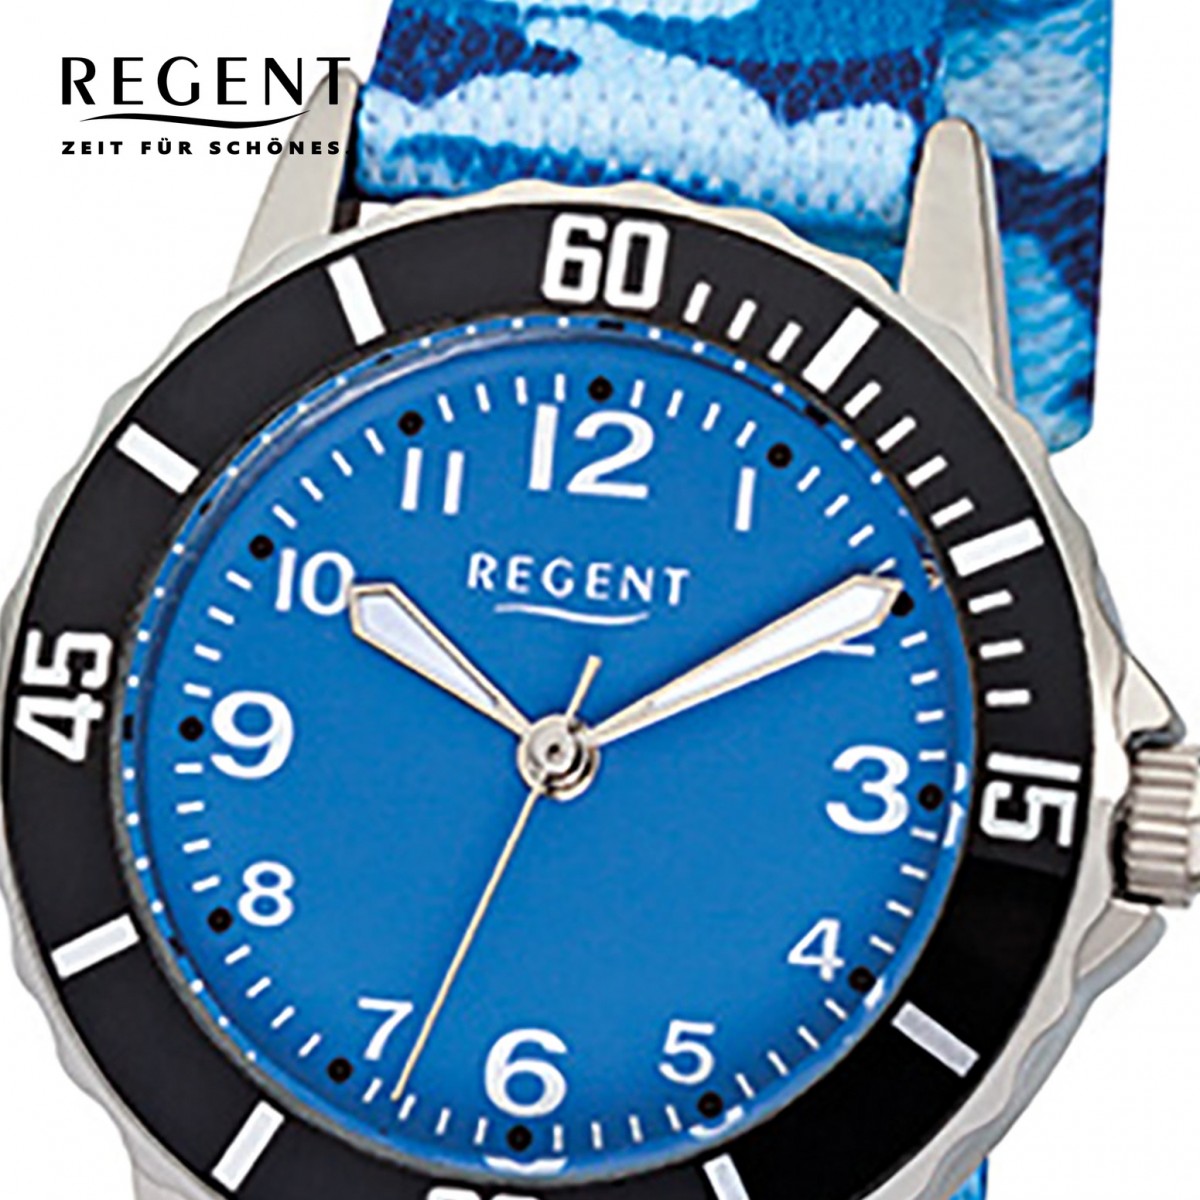 Kinder-Armbanduhr Stoff-Armband Quarz-Uhr Textil, F-940 URF940 Regent blau